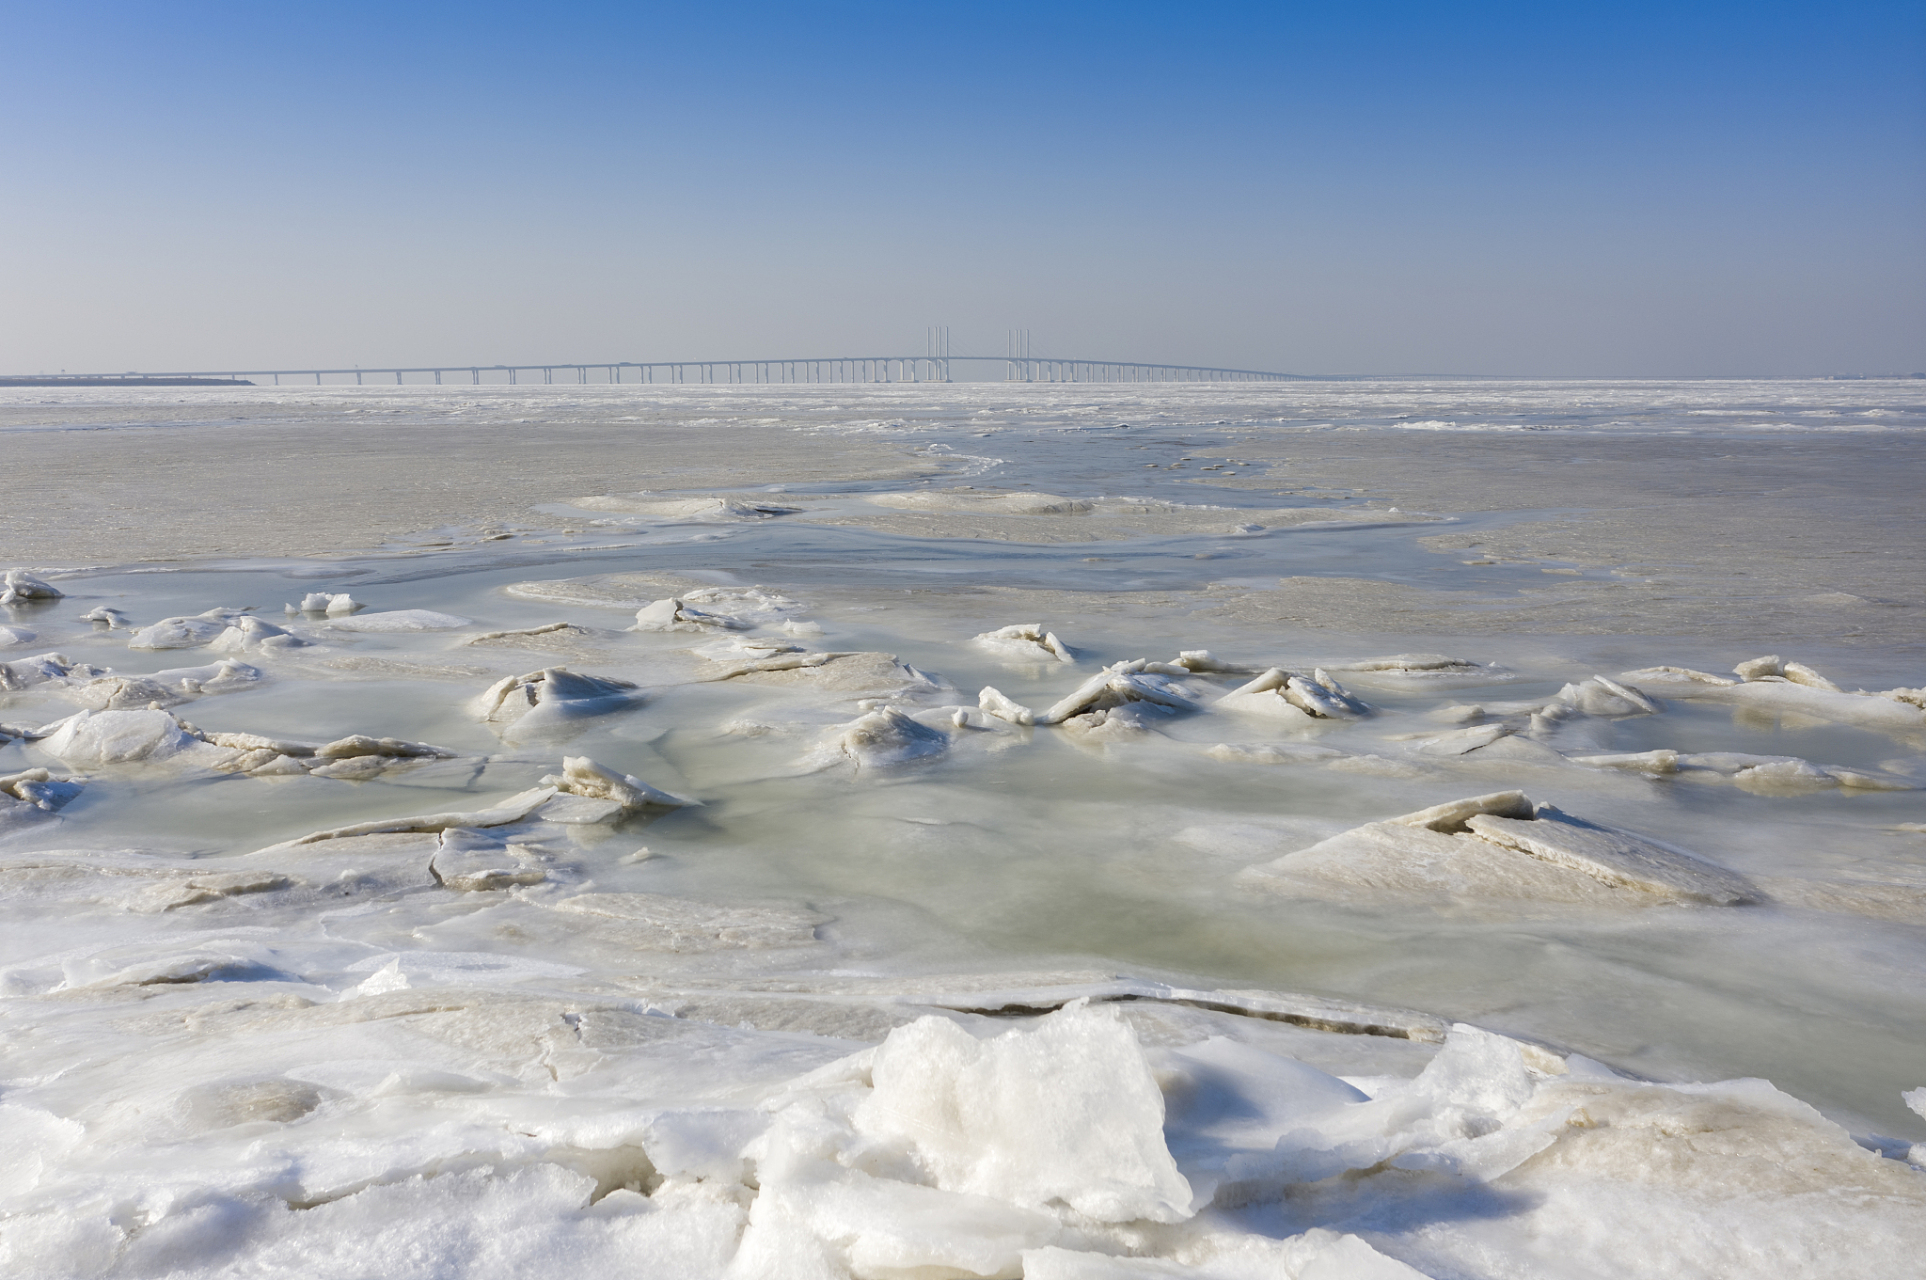 达里诺尔湖:位于内蒙古赤峰市的达里诺尔湖在冬季湖面封冻,呈现出壮丽